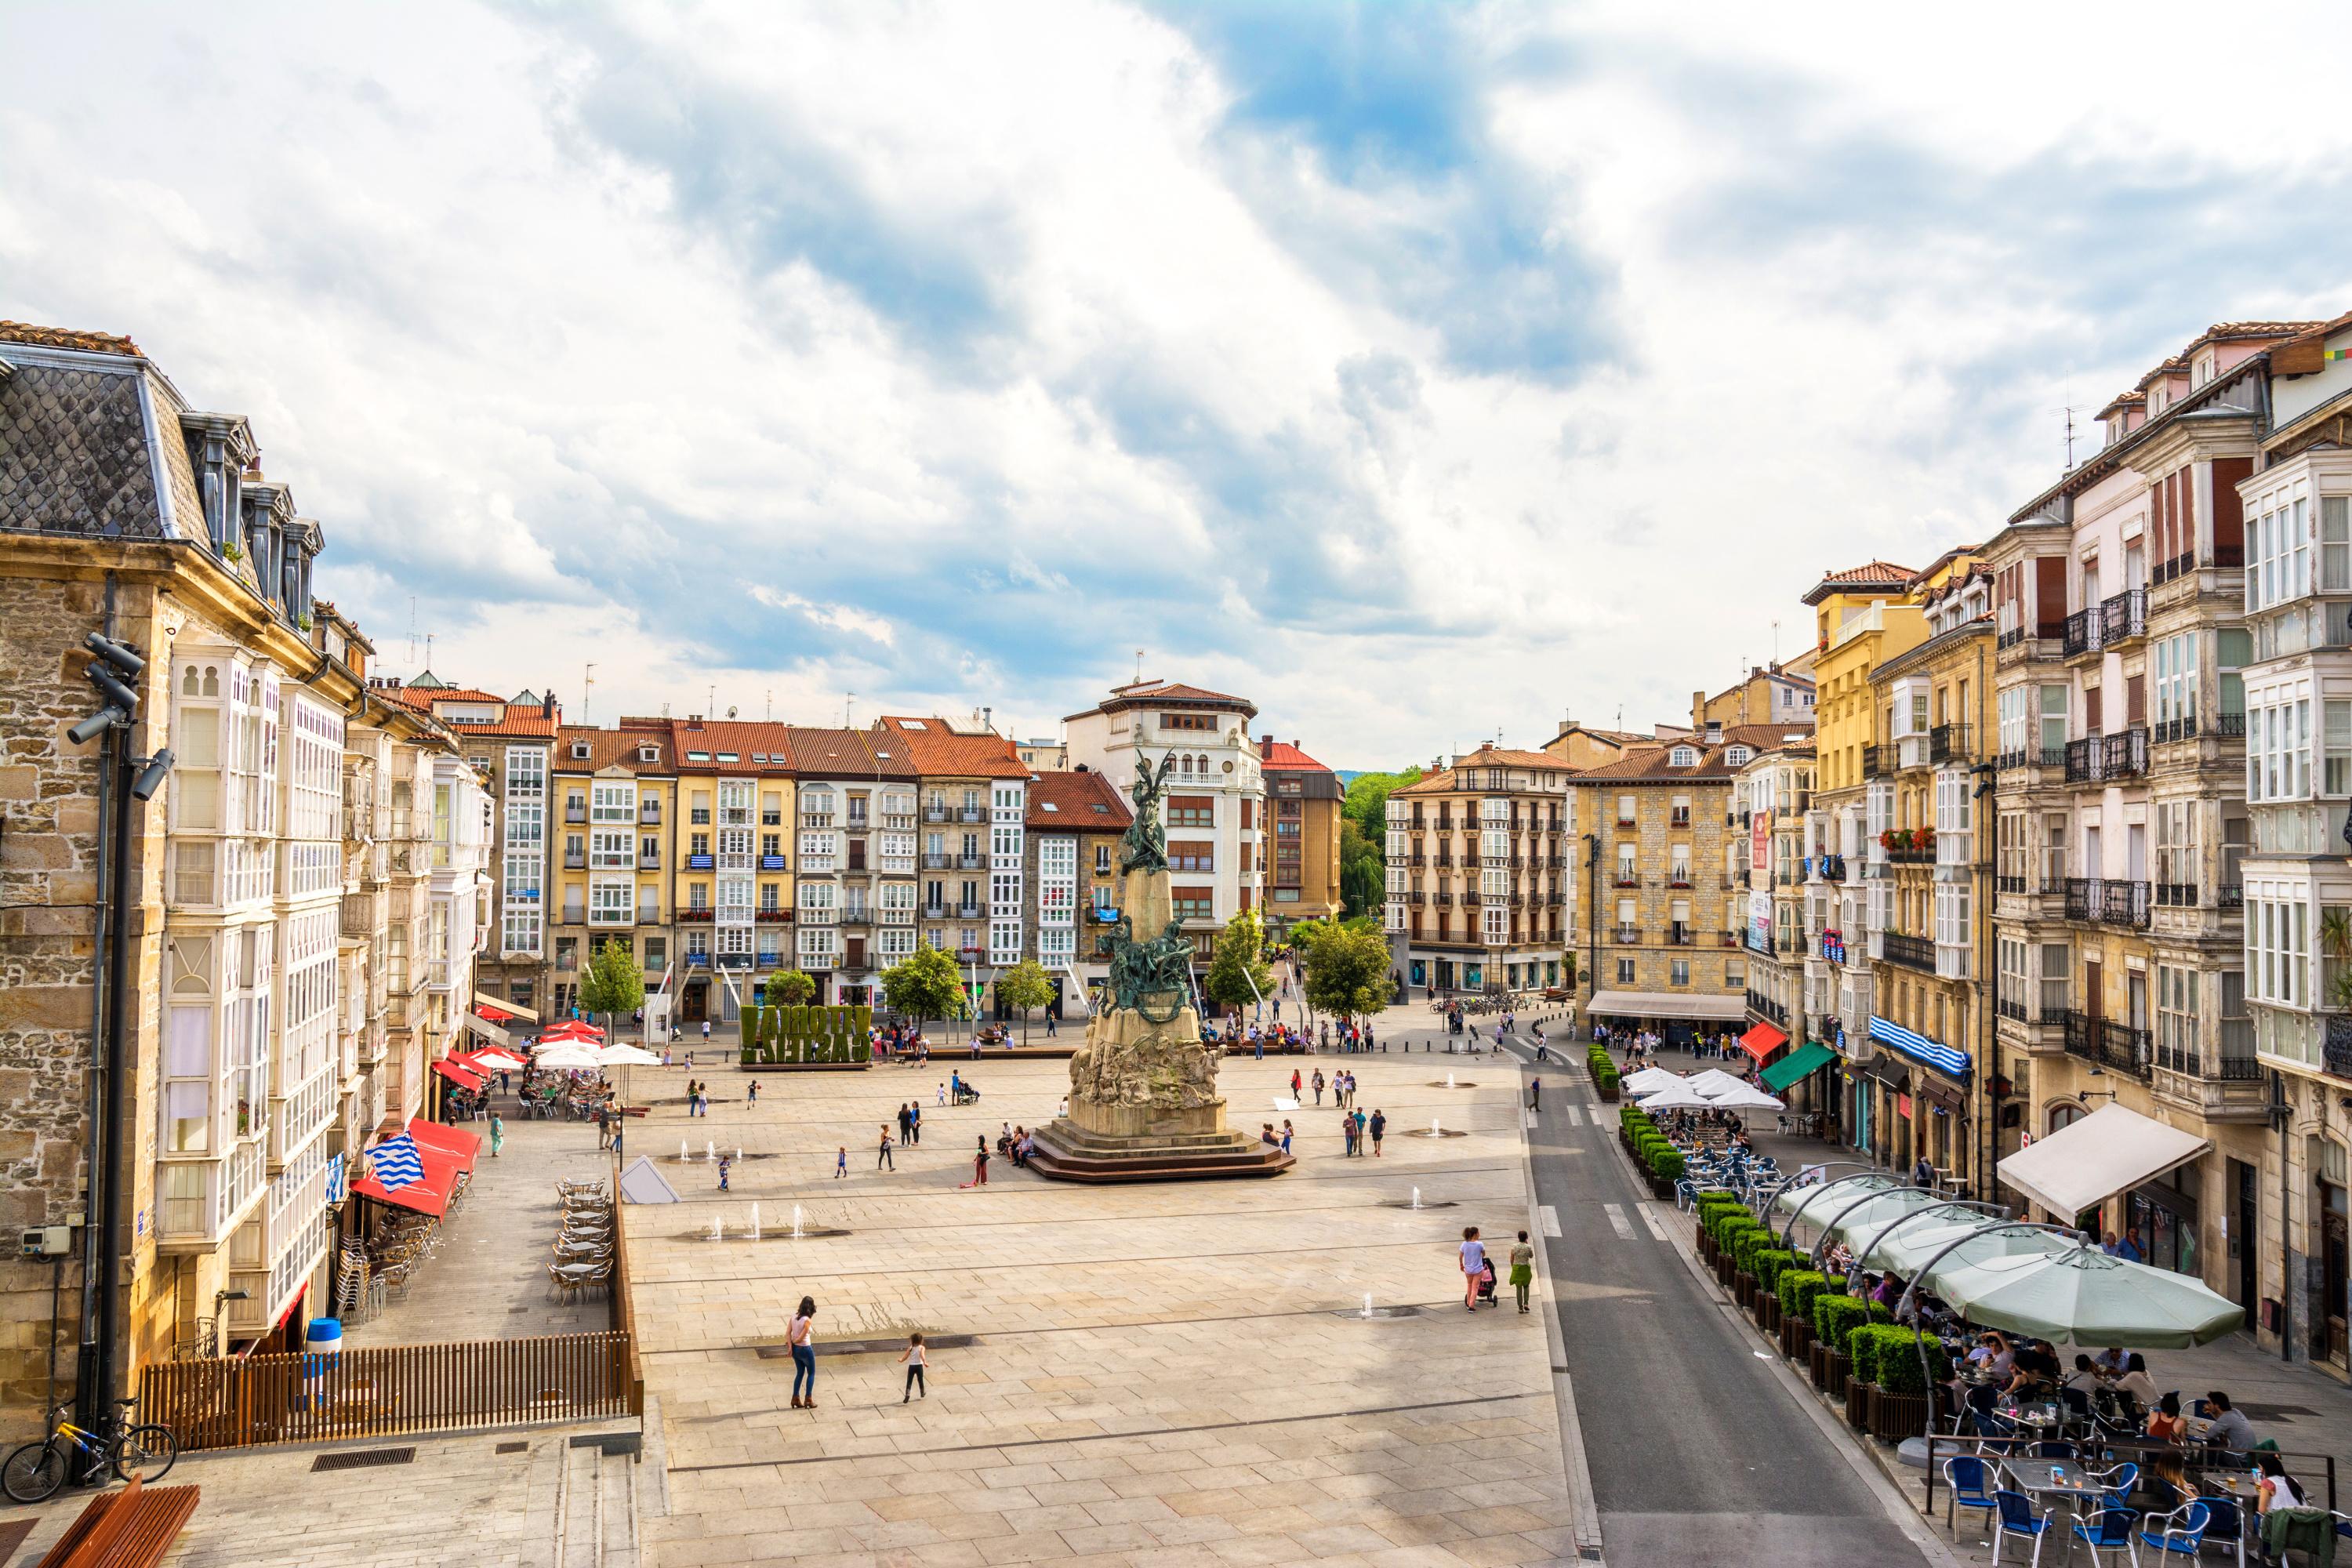 visiter le pays basque espagnol en 5 jours : nos conseils d'itinéraire jour par jour